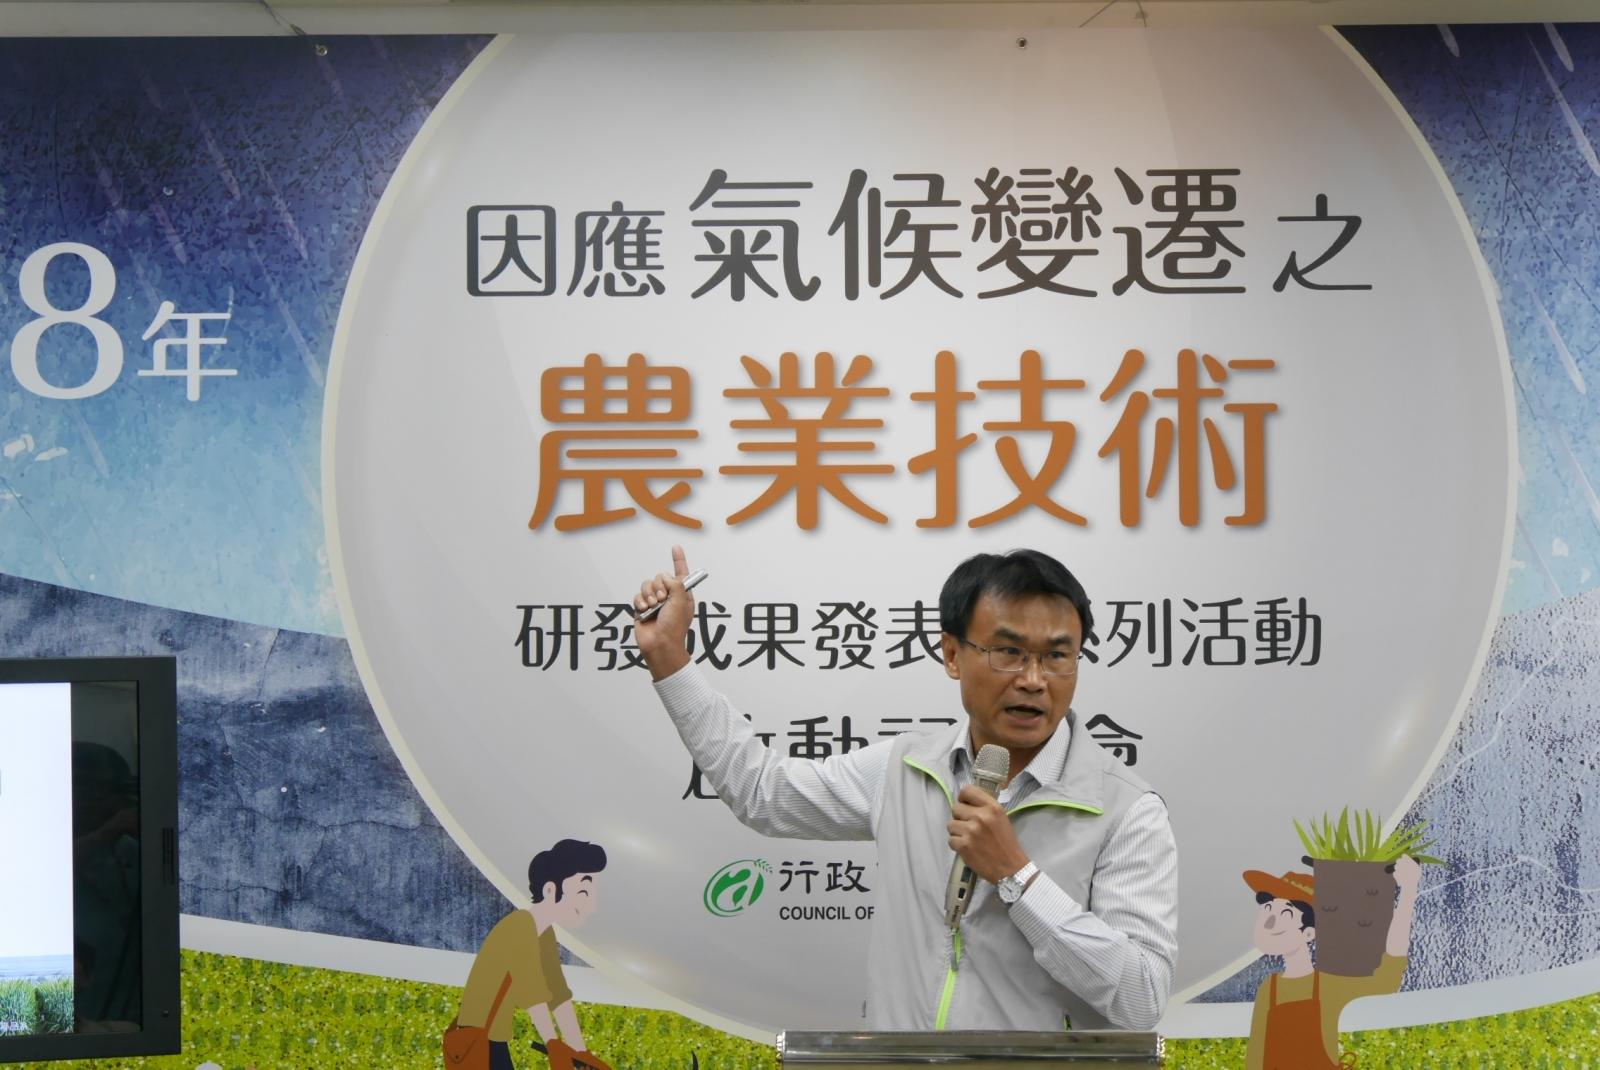 農委會陳吉仲主委說明氣候變遷對農業部門的影響及調適策略